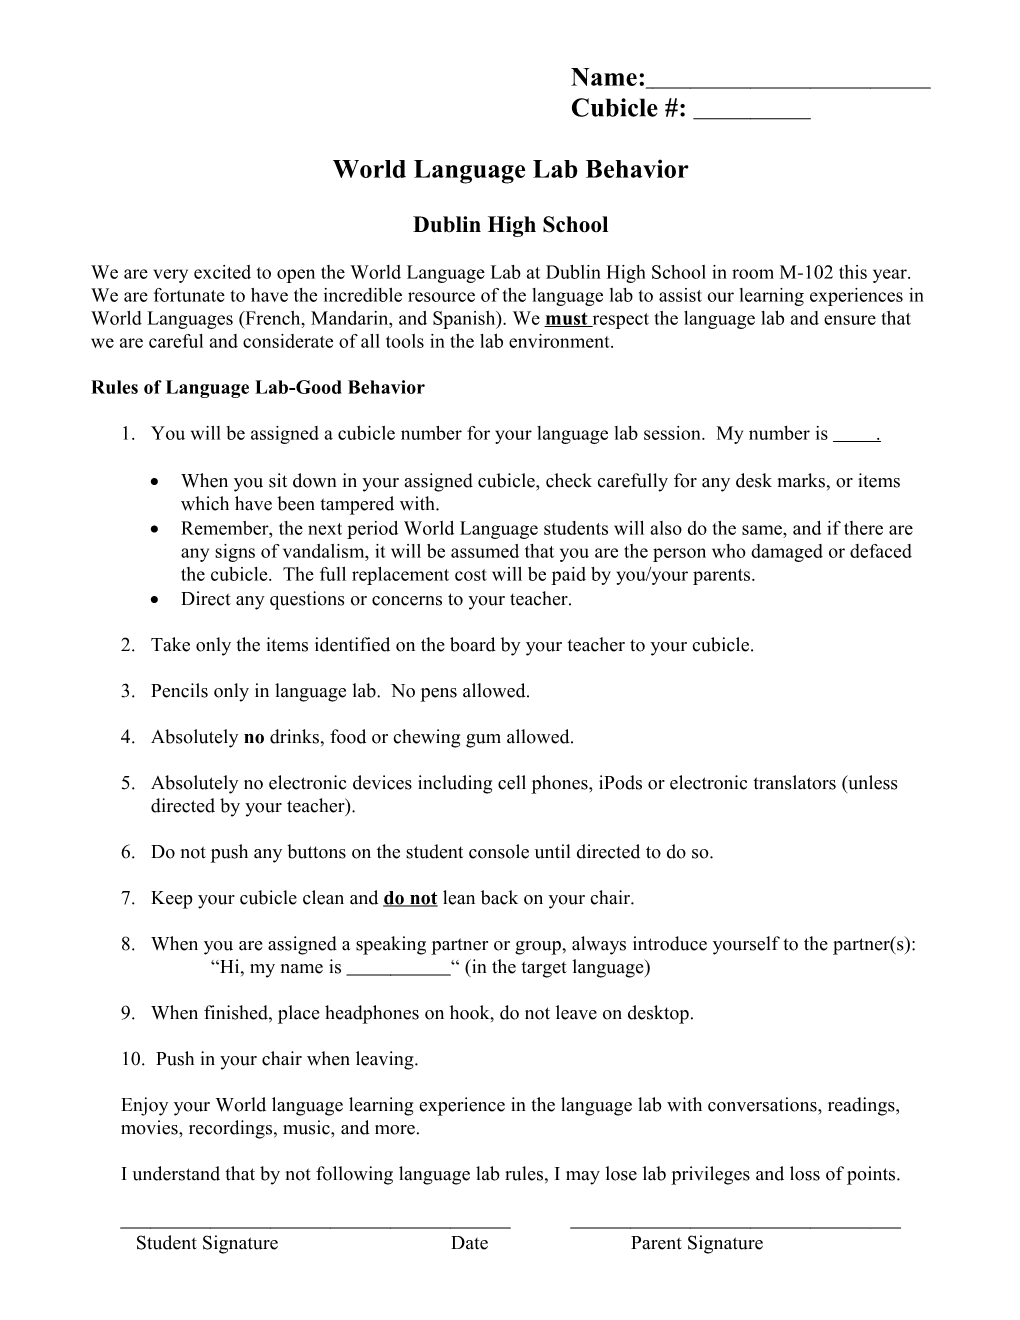 Language Lab Etiquette